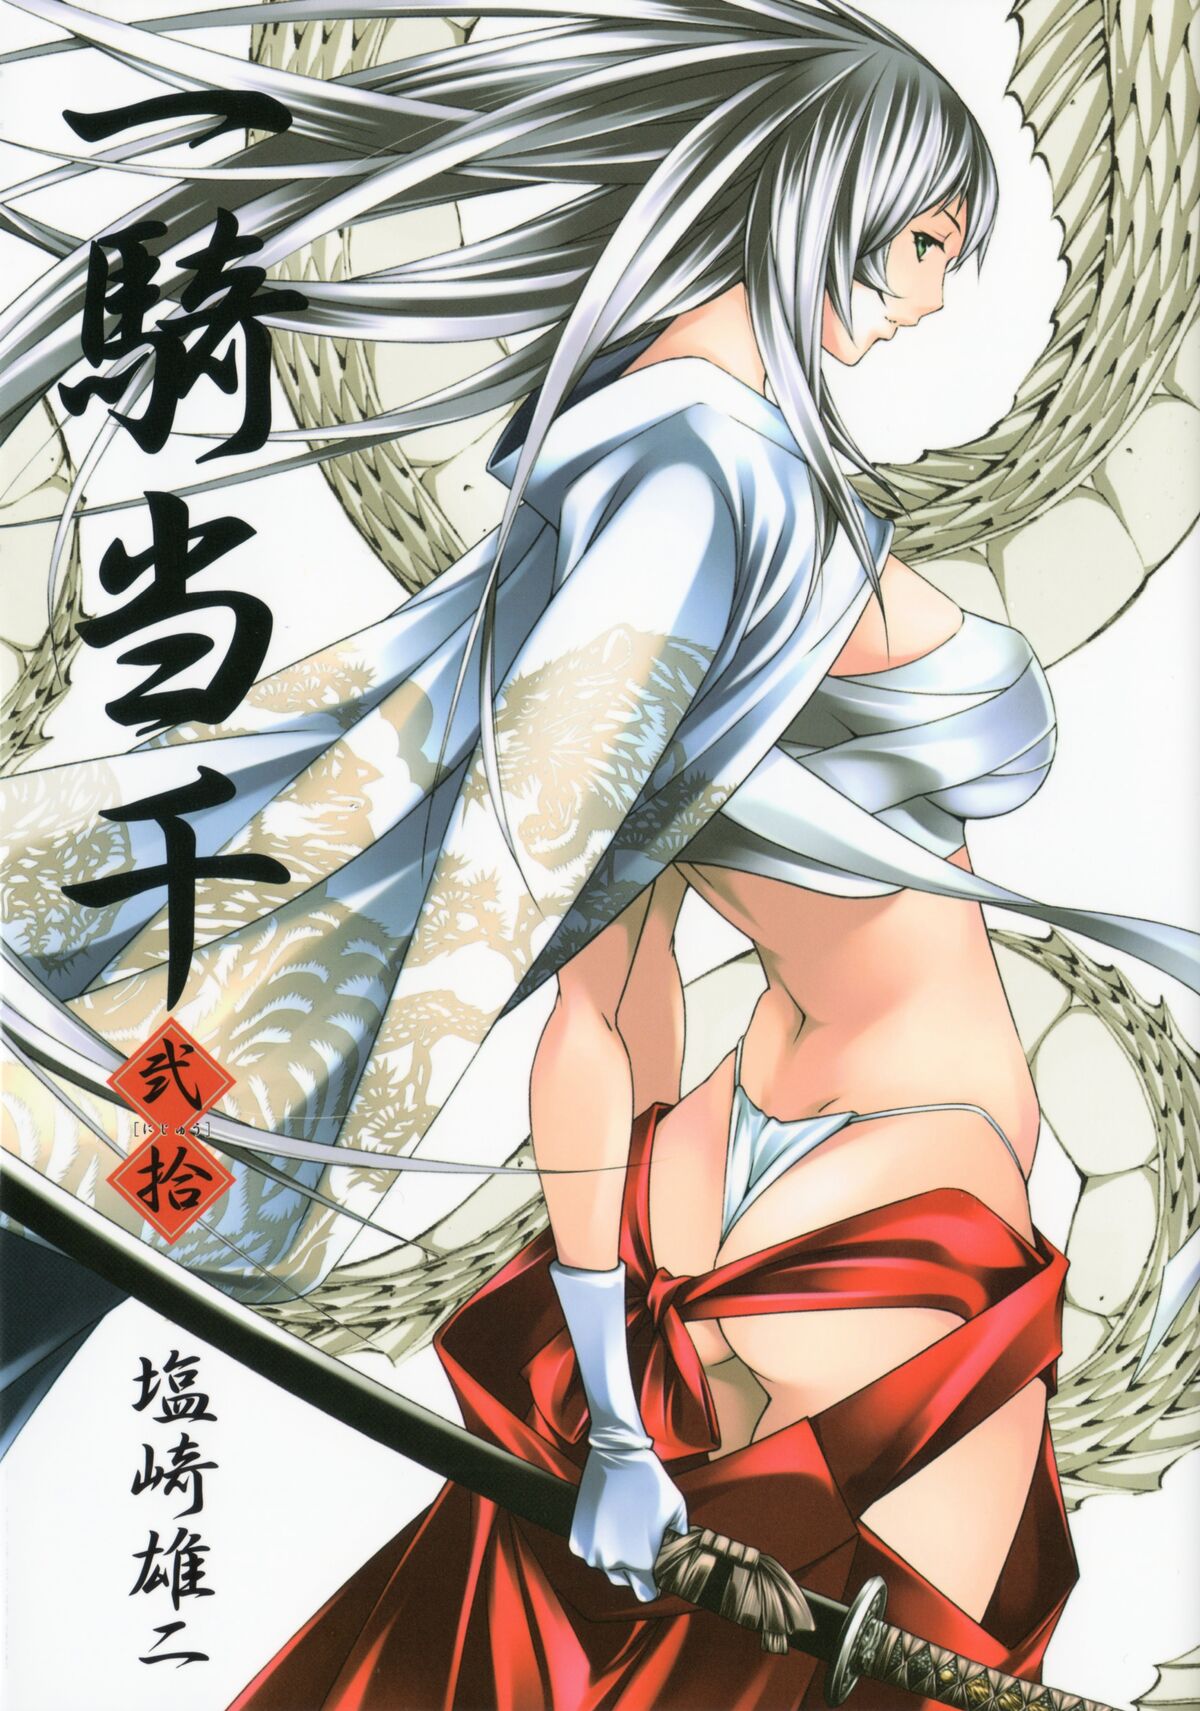 Ikkitousen Anime Game Figures - Shiryu open eyes Shin Ikkitousen manga